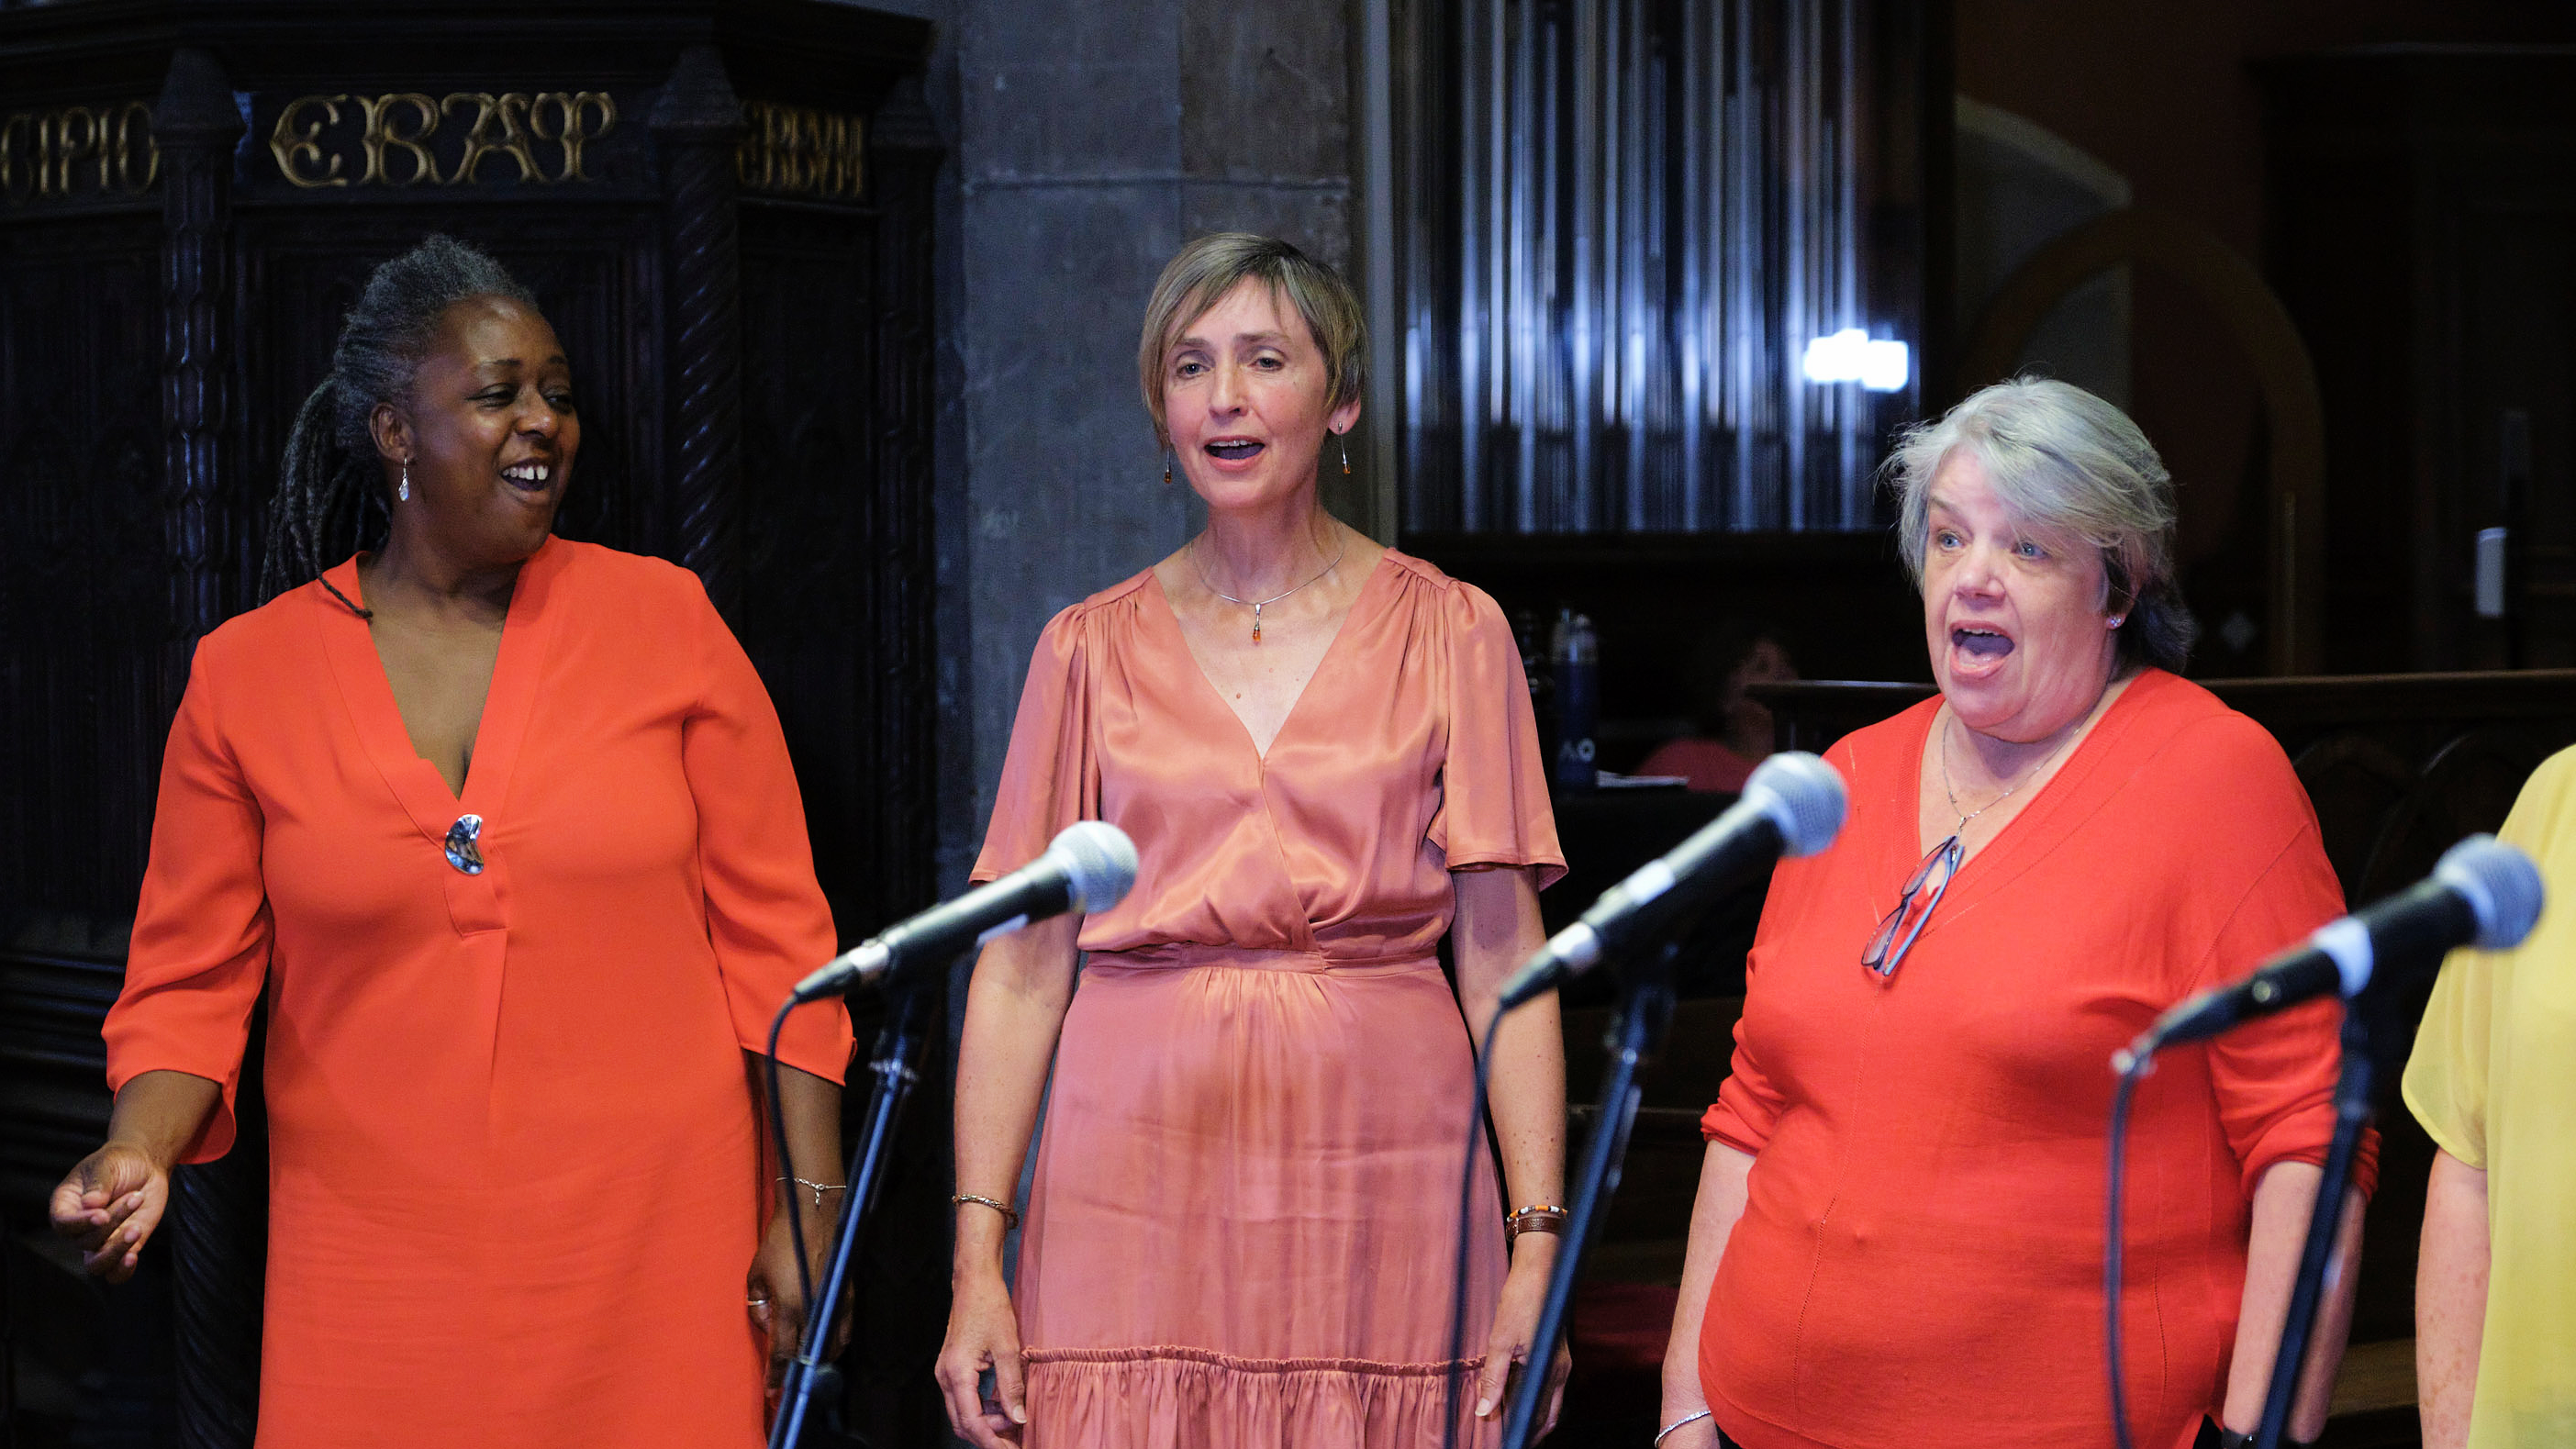 eclipse choir focus voices